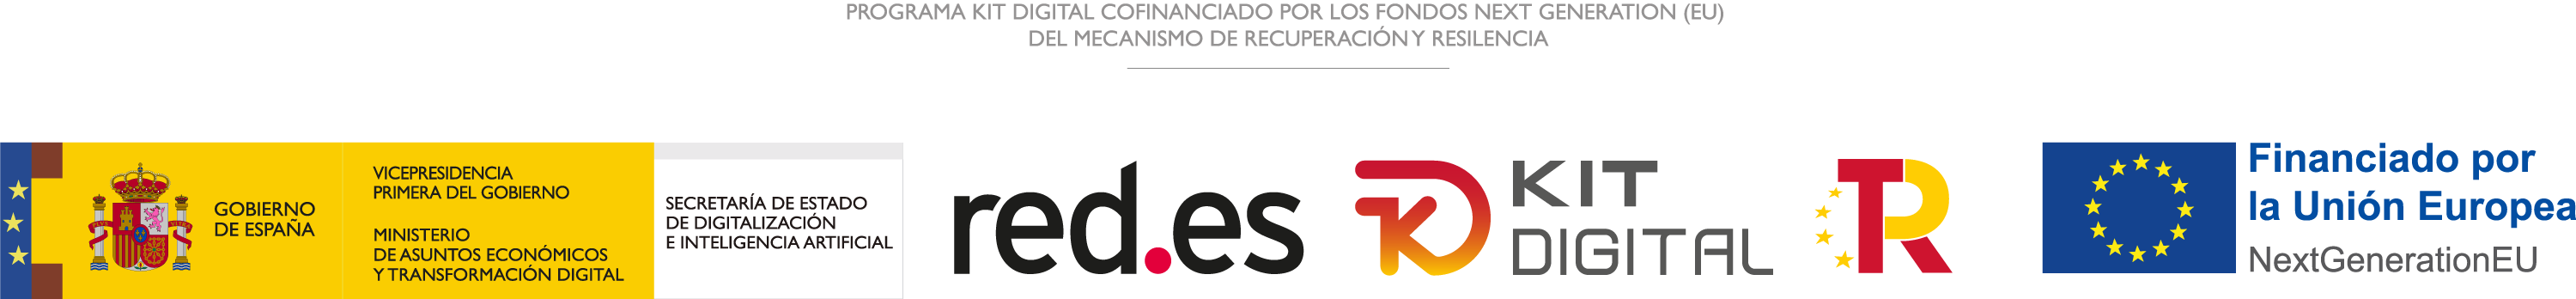 Logotipo Financiado por la Unión Europea, Plan de Recuperación, Transformación y Resiliencia, red.es y Kit Digital